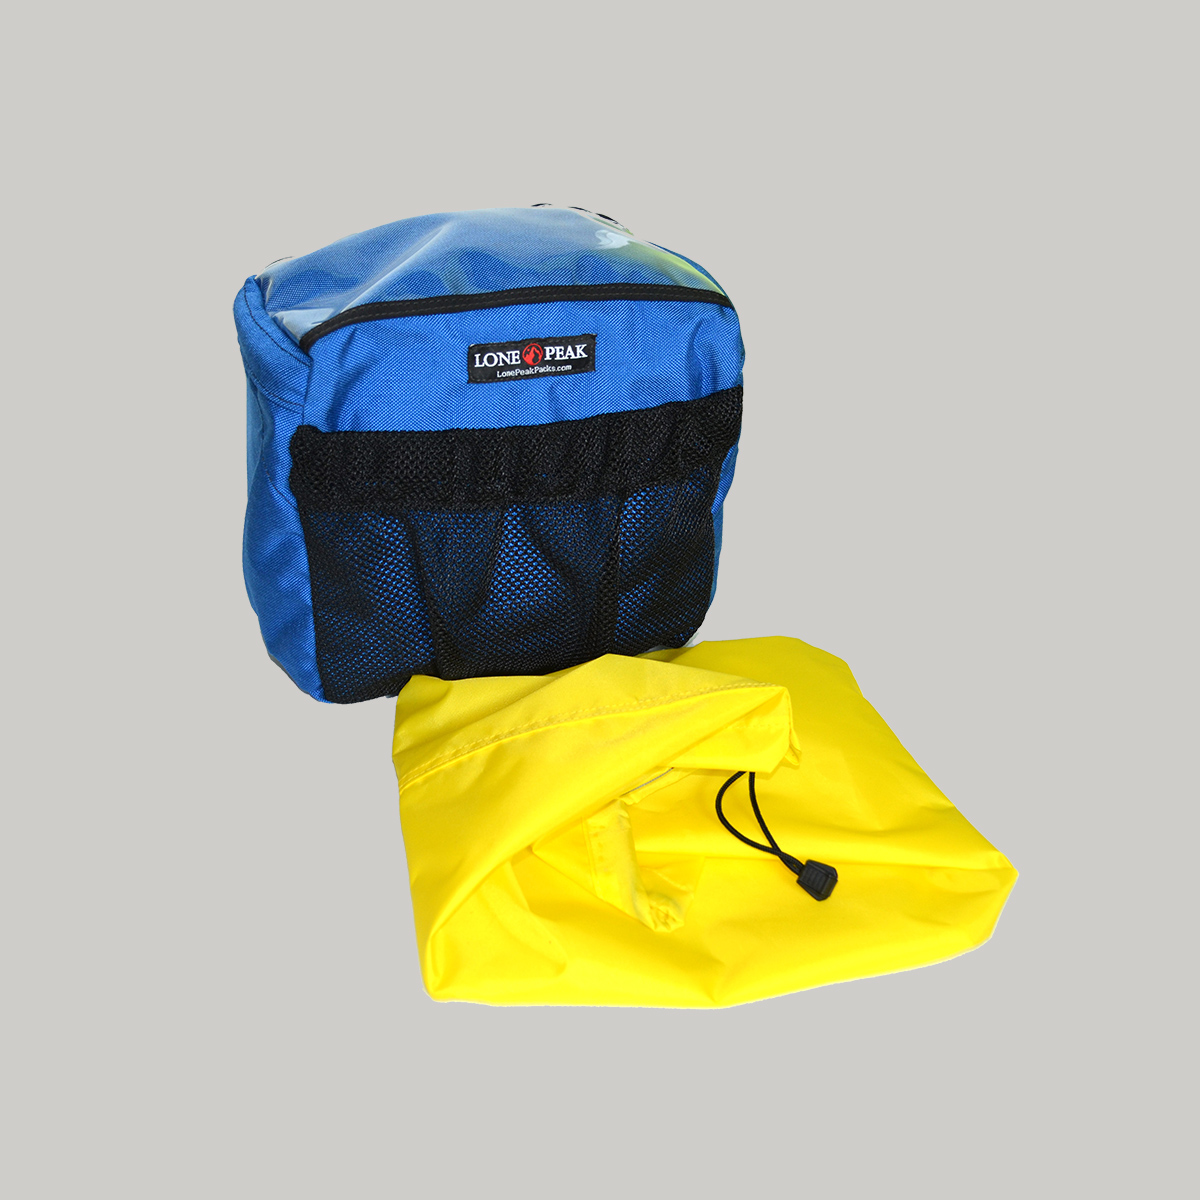 rain cover for handlebar bag